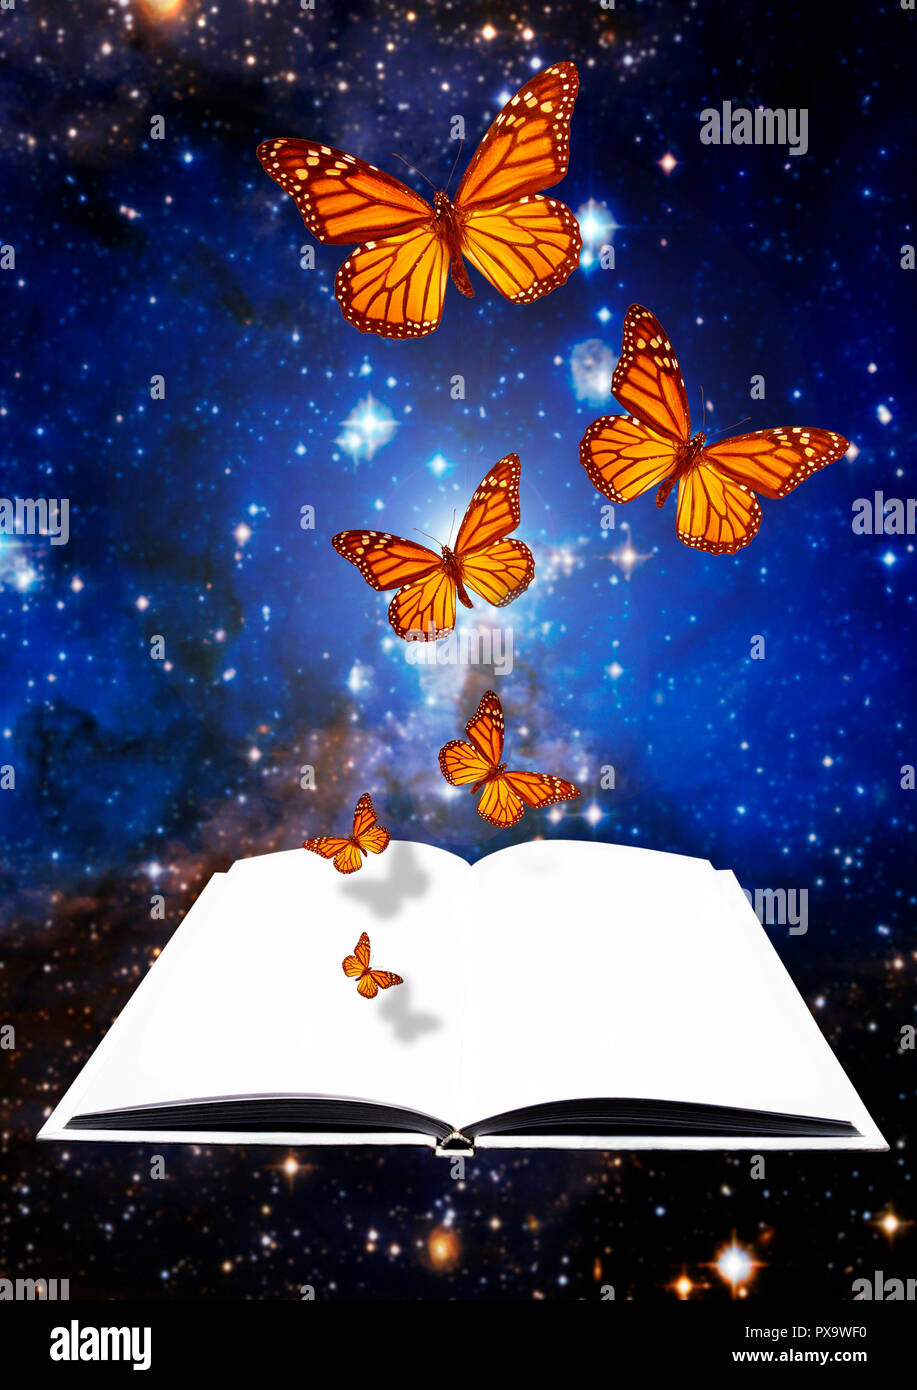 Schmetterlinge aus einem offenen Buch, Kreativität und Phantasie Konzept Stockfoto